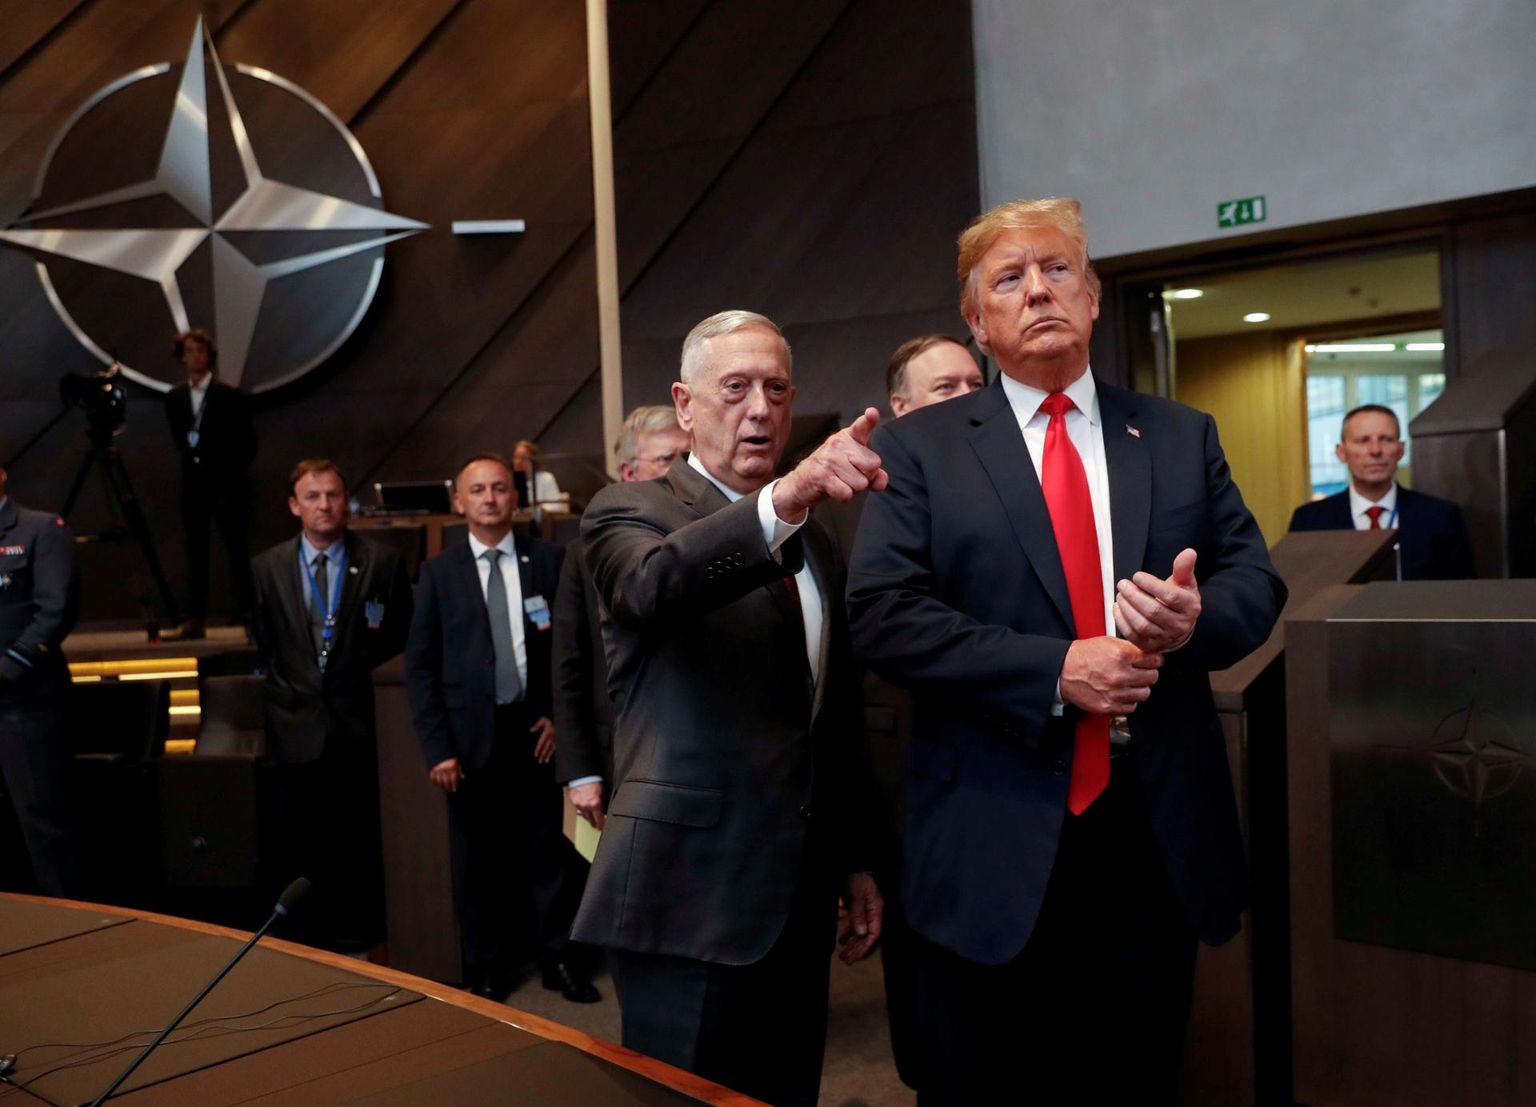 Kaitseminister Jim Mattis (vasakul) ei ole peagi enam president Donald Trumpi suunanäitaja kaitseküsimustes. Tema lahkumisega jääb Washington ilma olulisest tasakaalustavast jõust Trumpi administratsioonis.